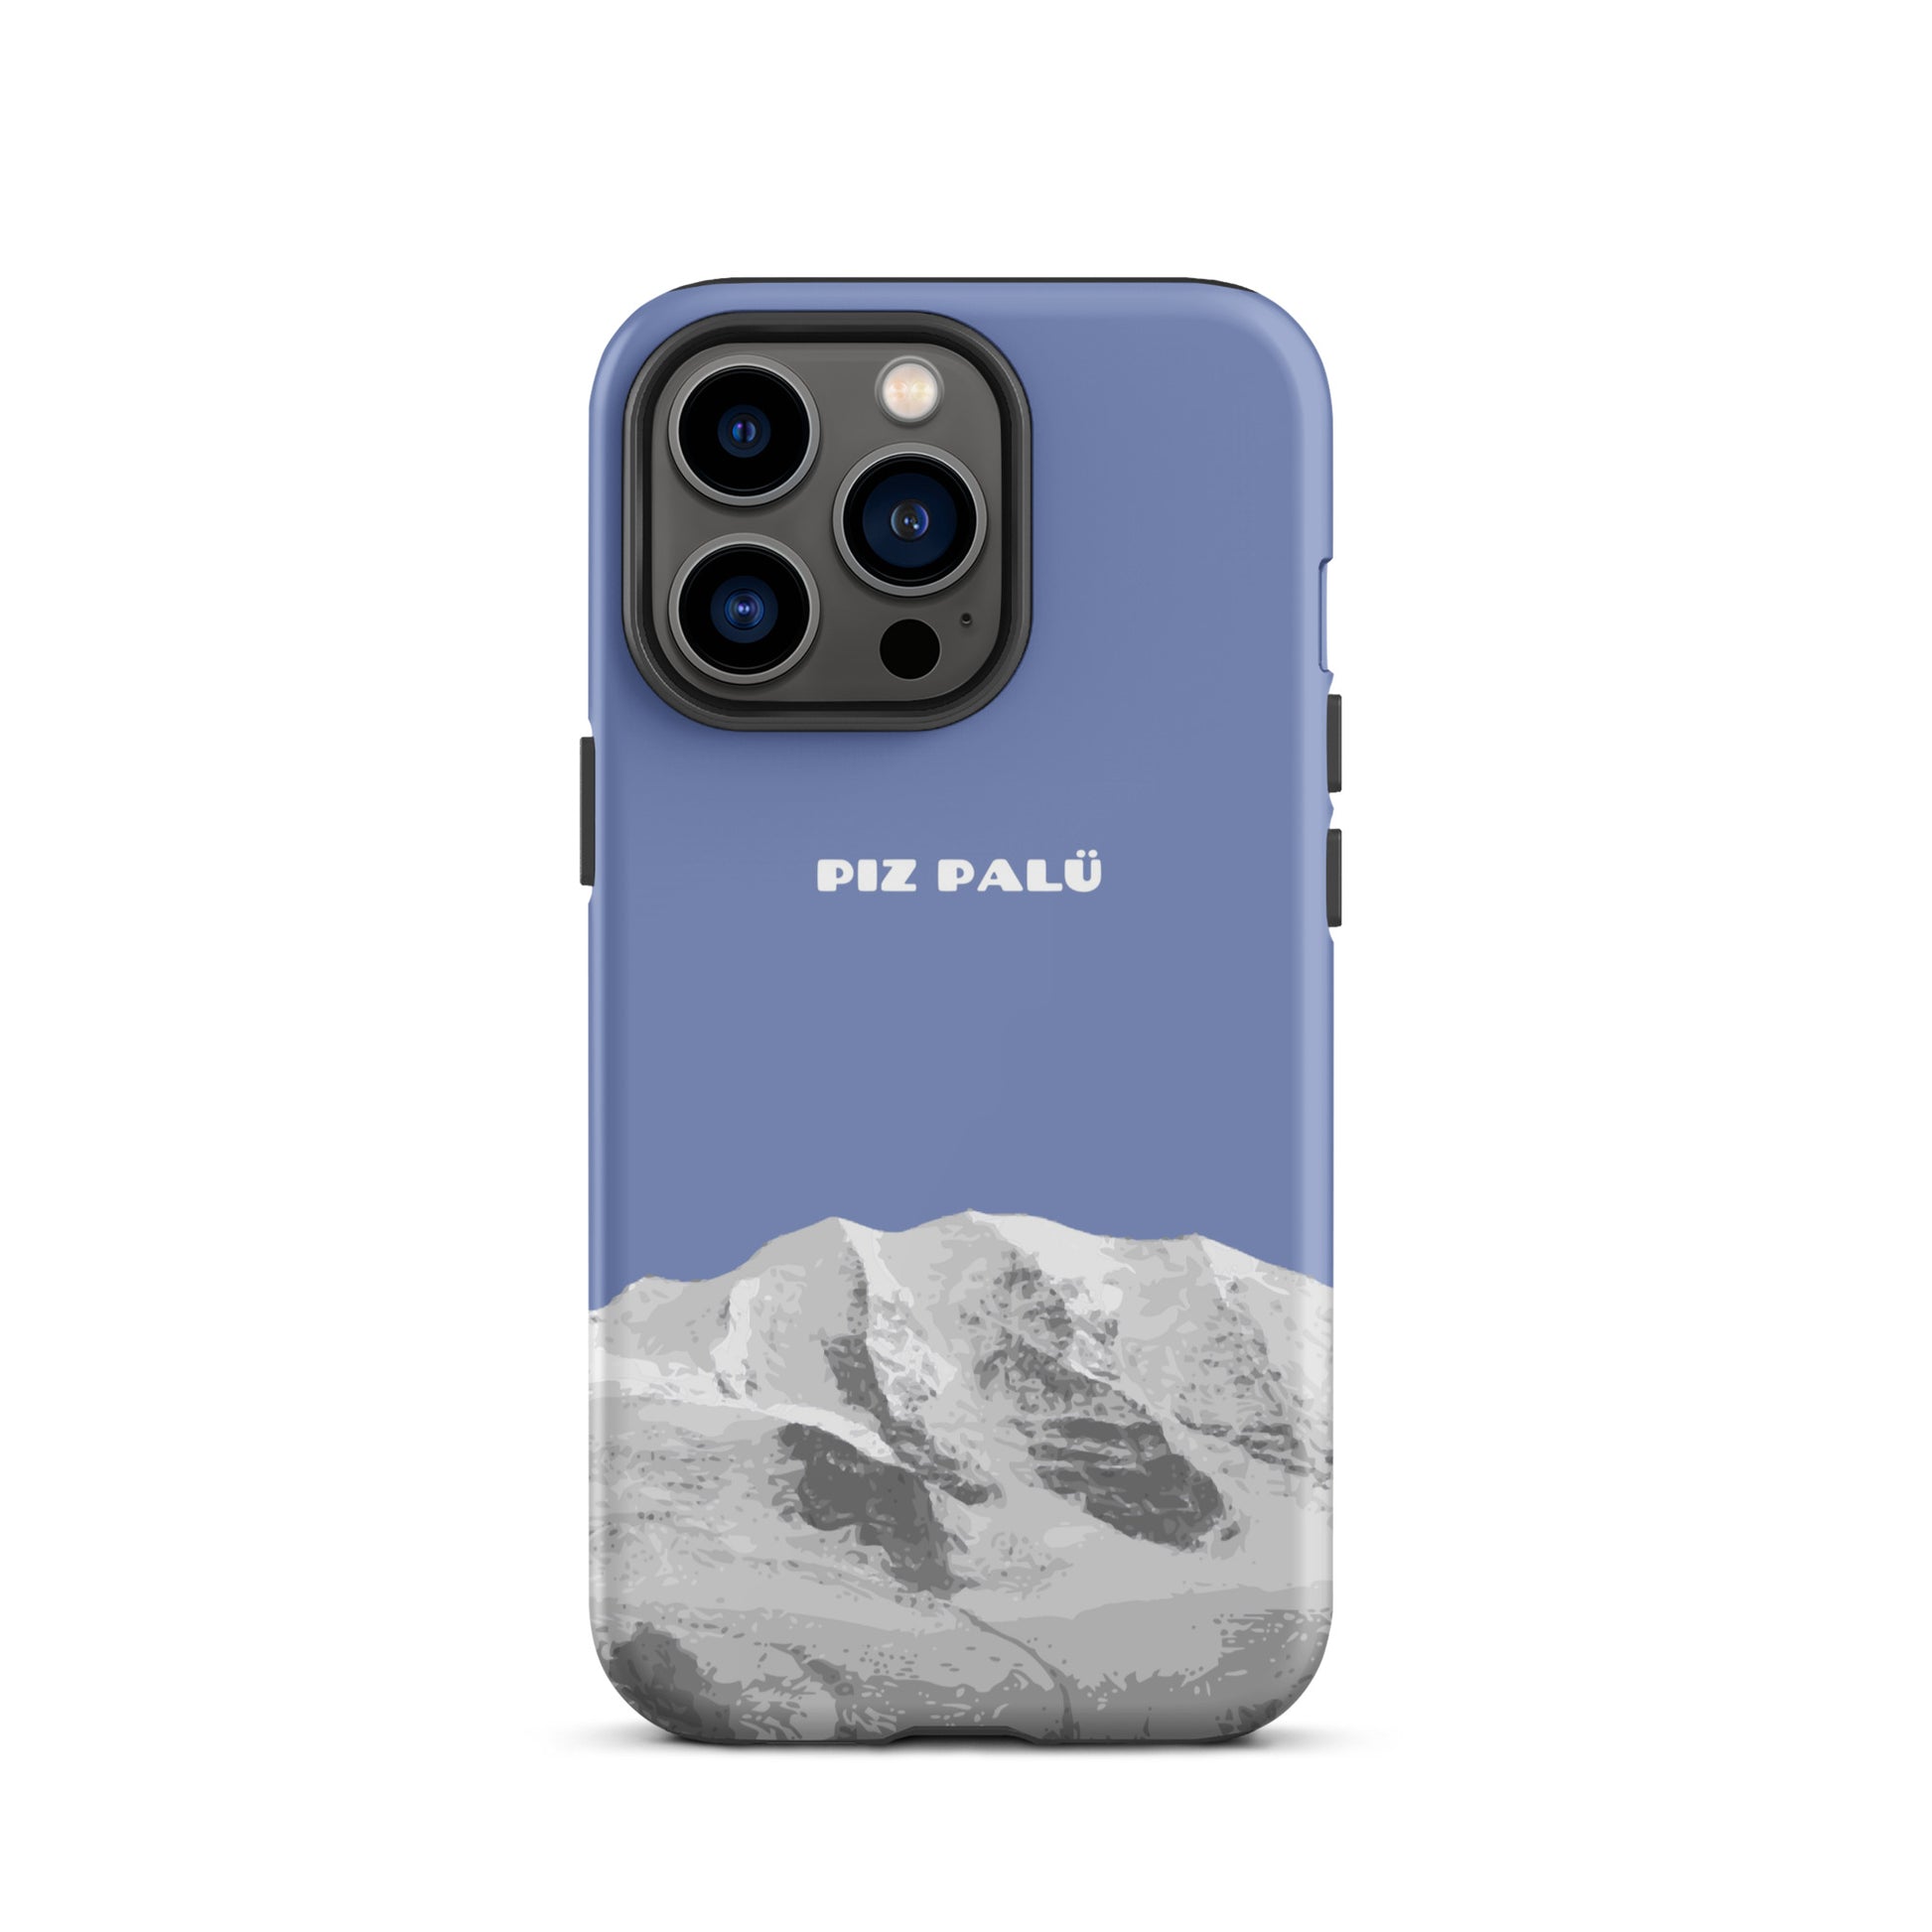 Hülle für das iPhone 13 Pro von Apple in der Farbe Pastellblau, dass den Piz Palü in Graubünden zeigt.